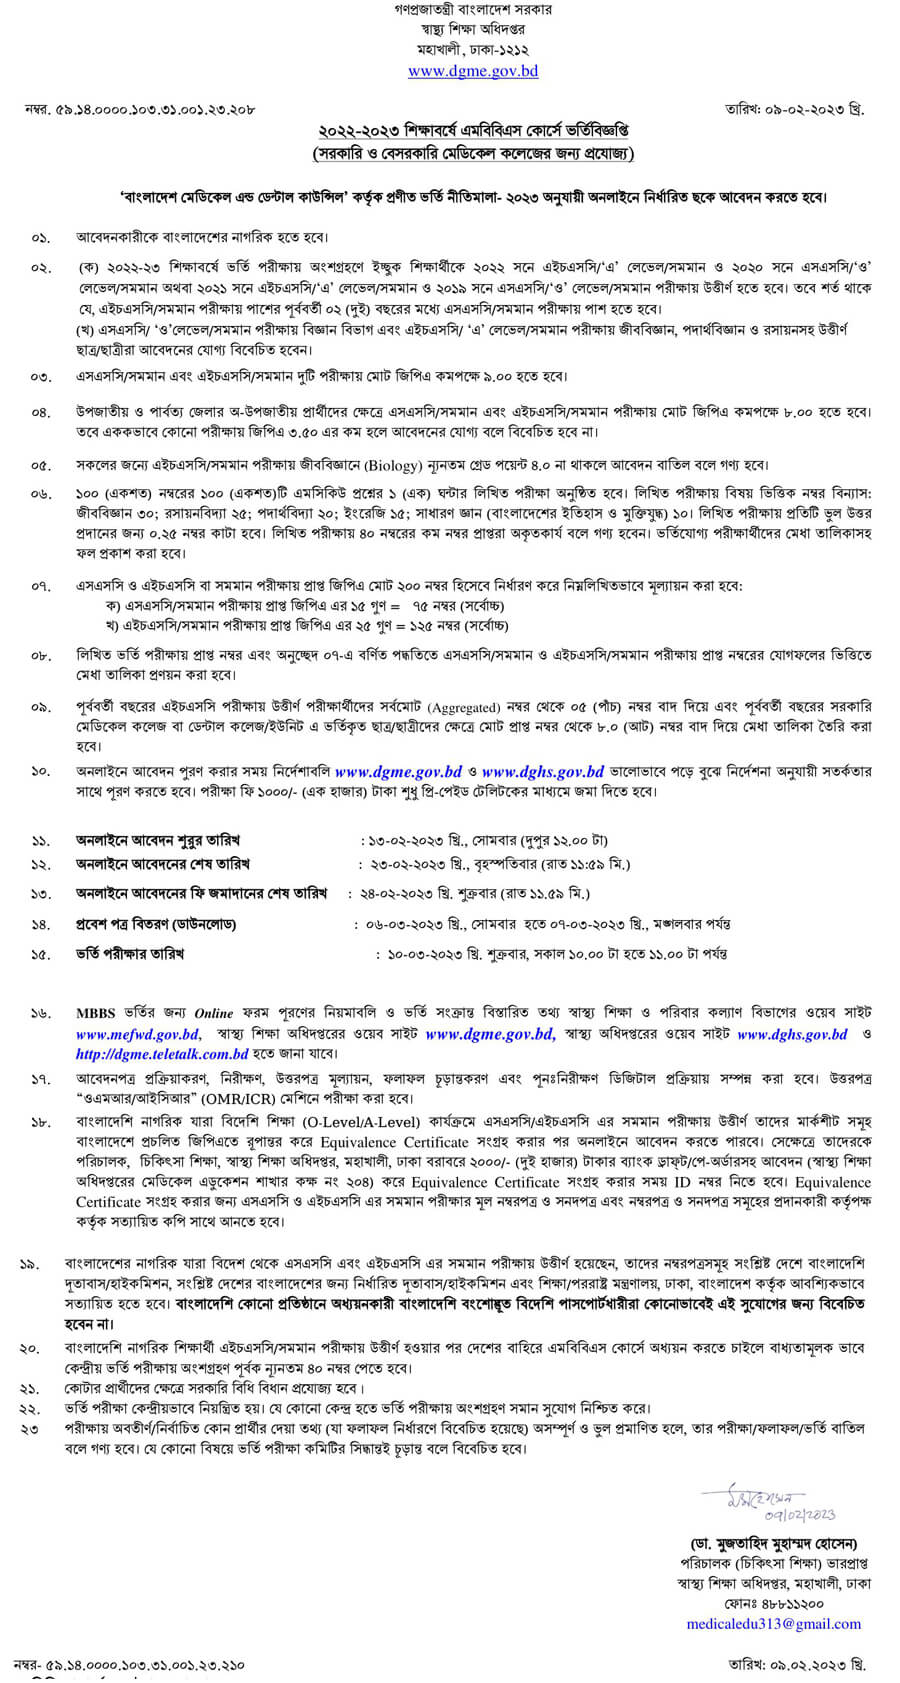 সরকারি-বেসরকারি মেডিকেল কলেজে এমবিবিএস ভর্তি ২০২৩ - govt and private medical college MBBS admission circular 2023 pdf http://dgme.teletalk.com.bd https://dgme.portal.gov.bd https://dghs.gov.bd